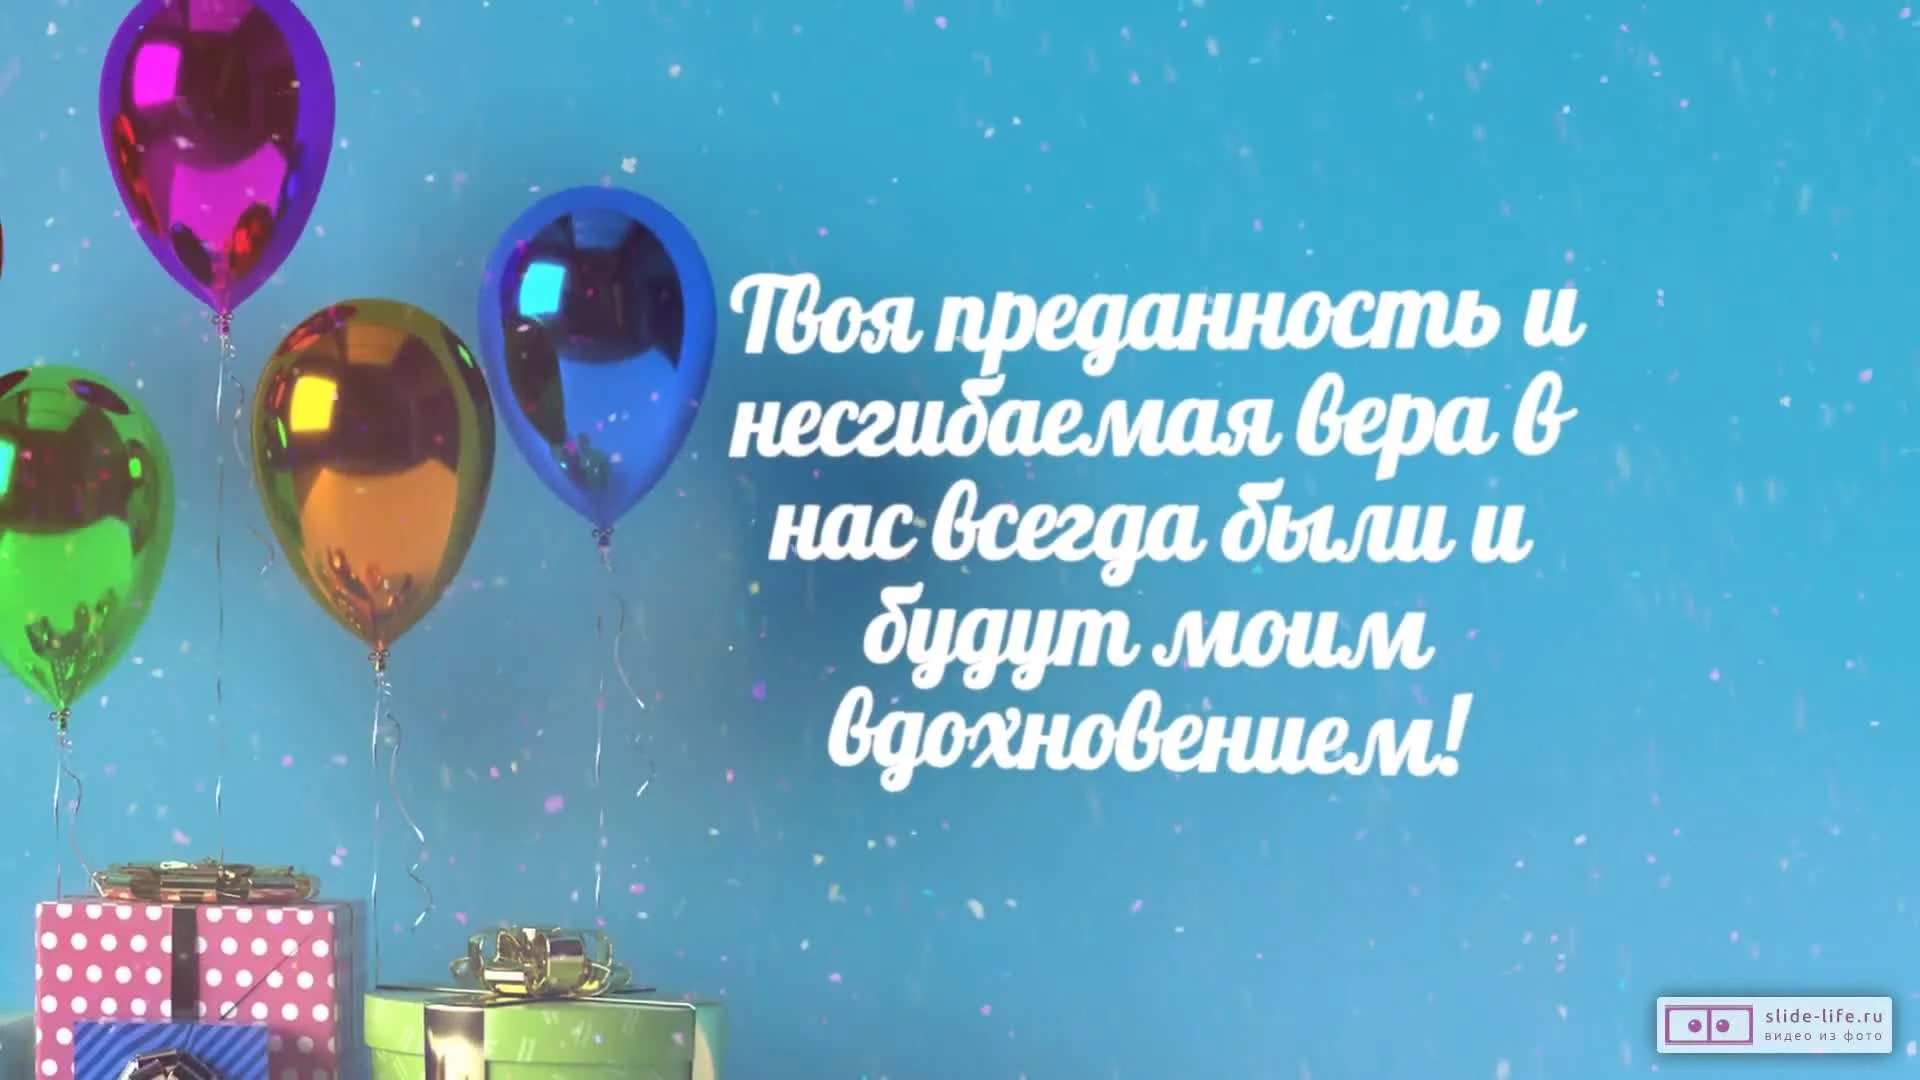 Голосовые поздравления - Поздравление с днем рождение на казахском